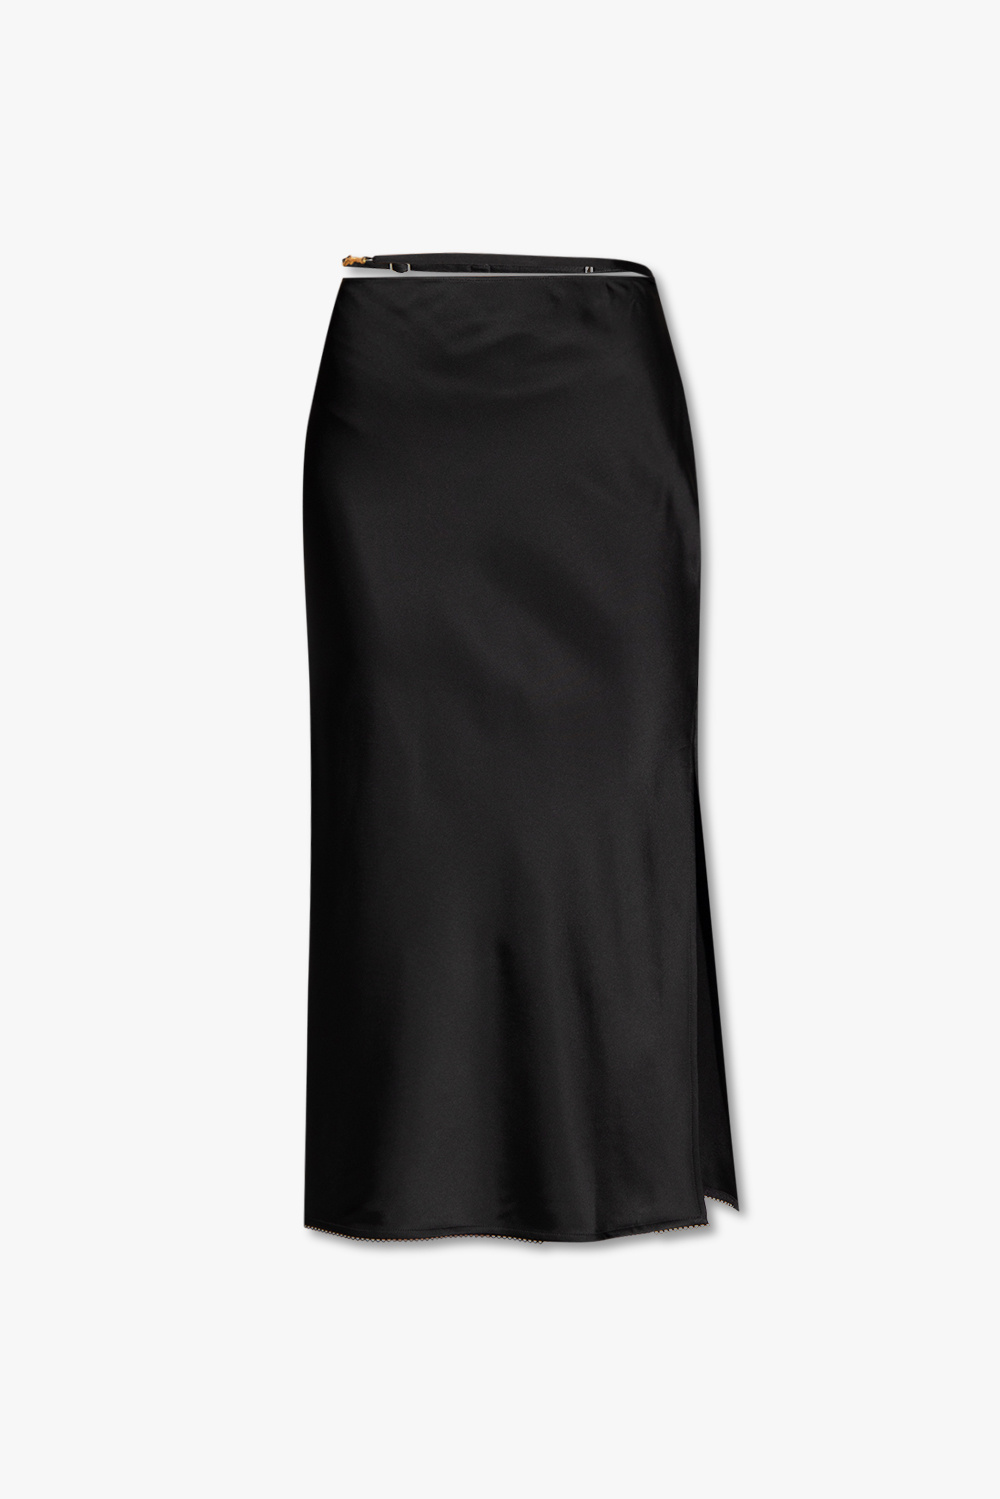 Jacquemus ‘Notte’ satin skirt